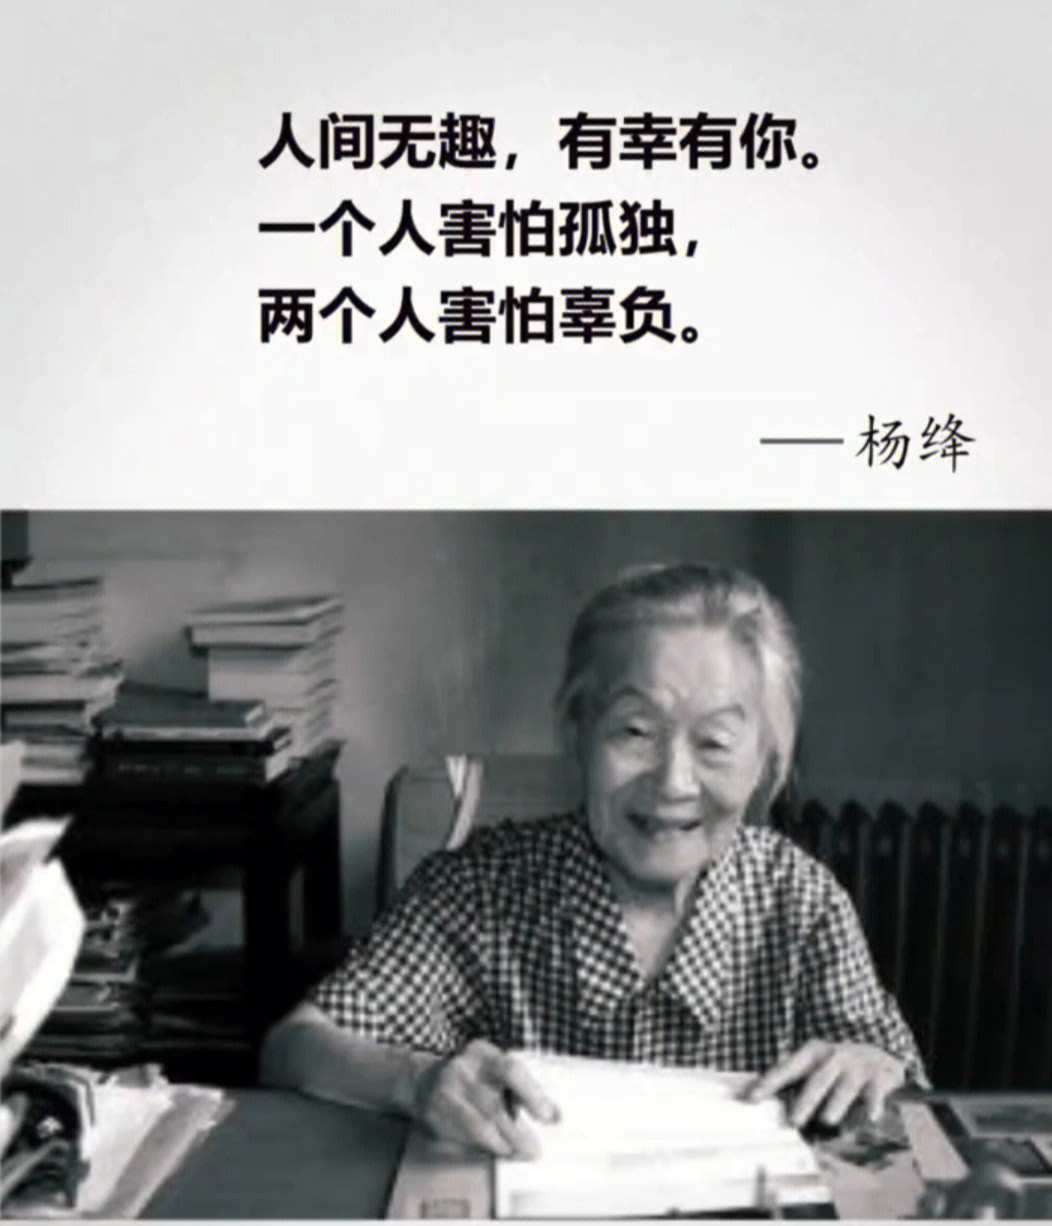 杨绛先生:人间无趣,有幸有你一个人害怕孤独,两个人害怕辜负拥之则安